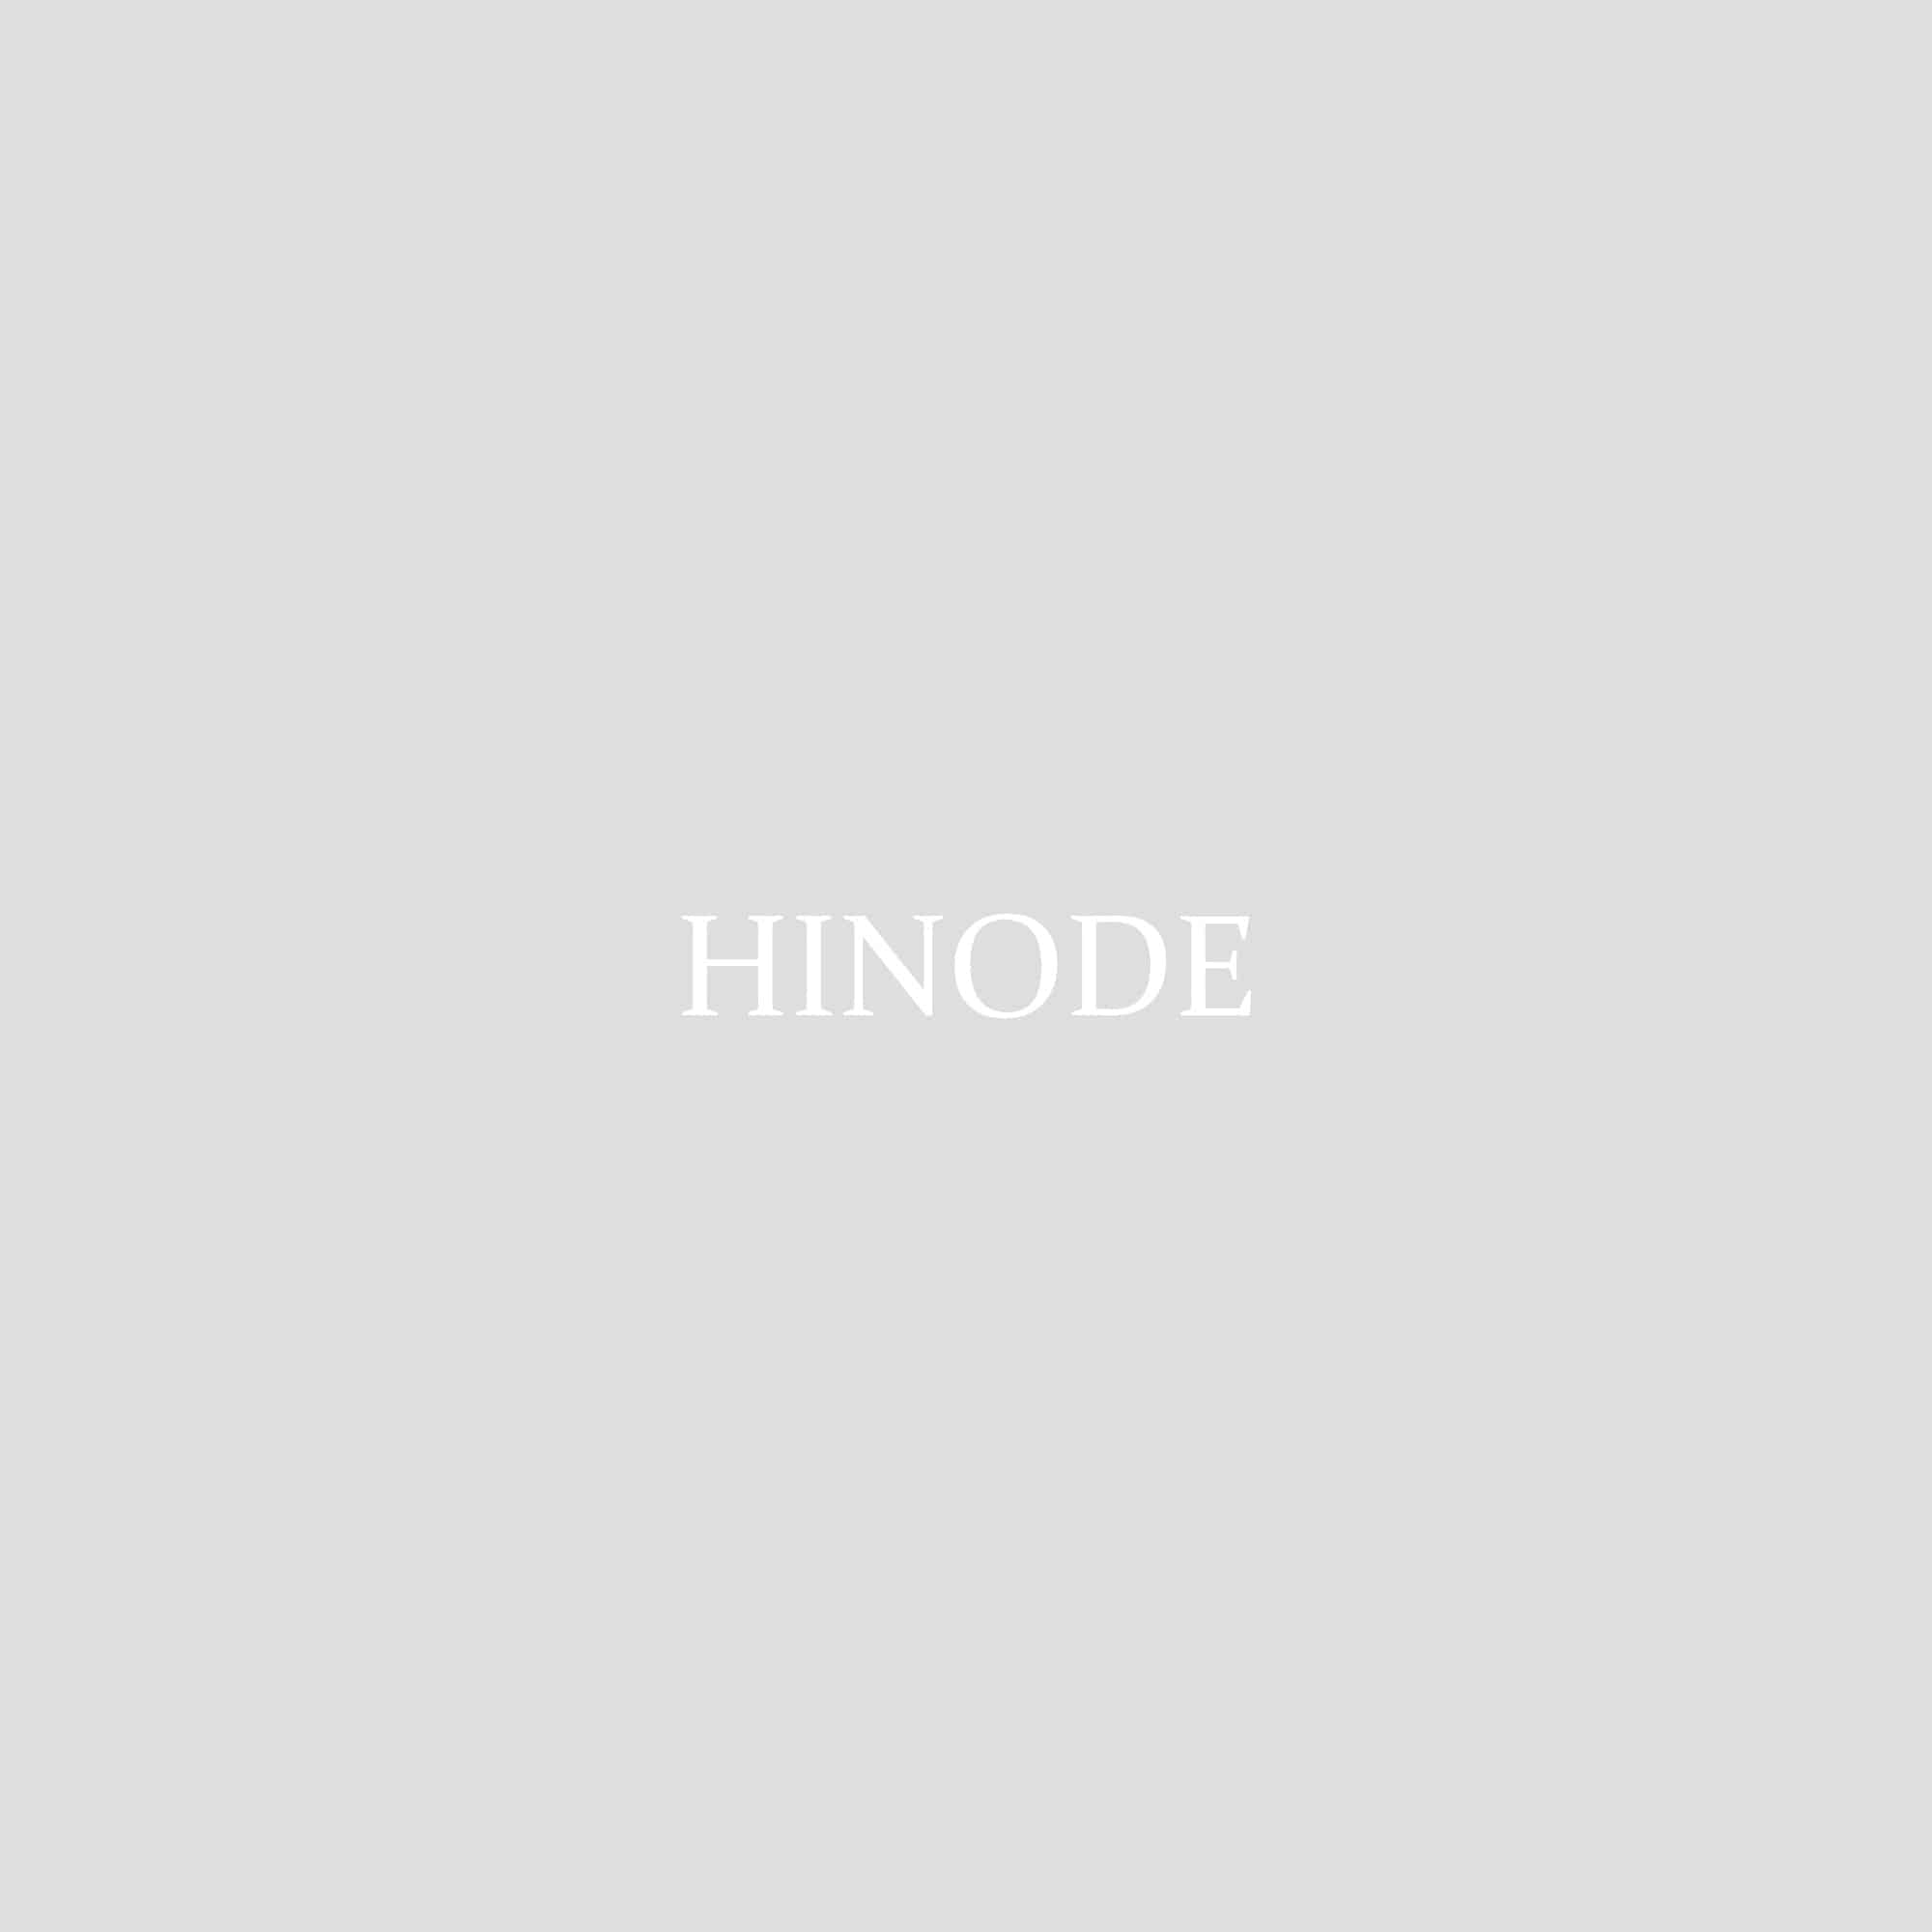 HINODE